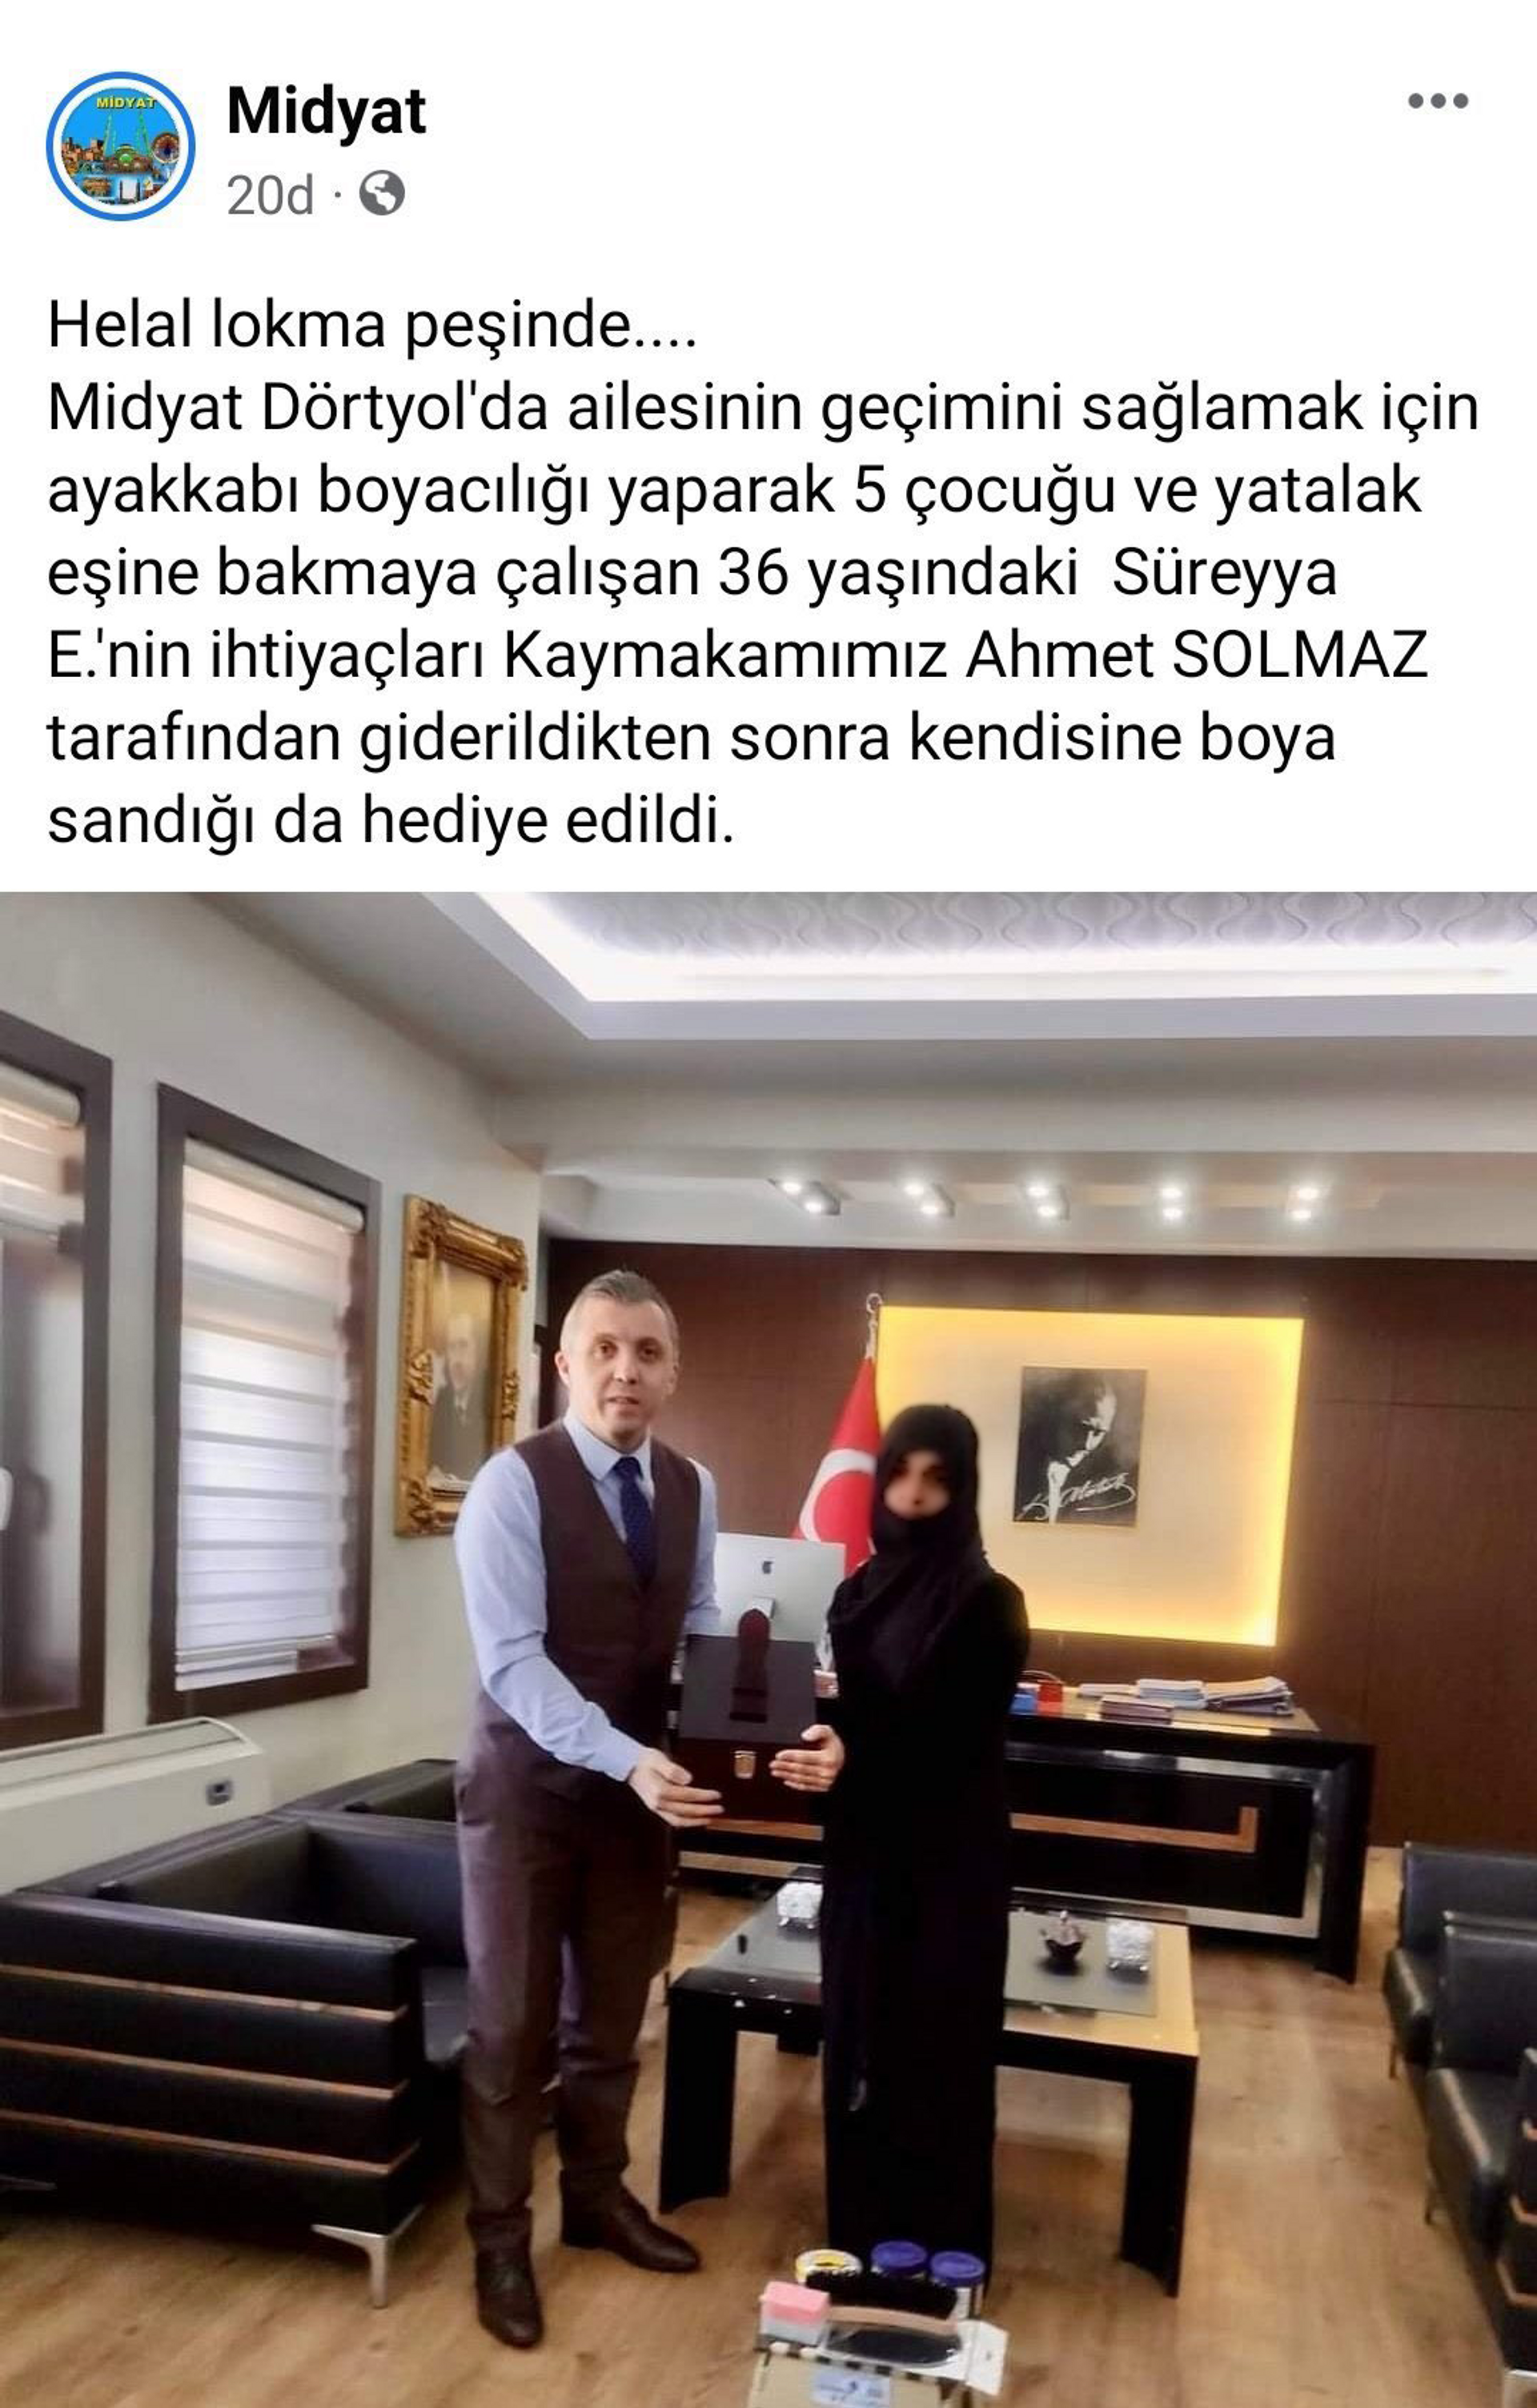 Kaymakamlığın sosyal medya hesaplarından Süreyya E.'ye plaket verilirken paylaştığı fotoğraf - Sputnik Türkiye, 1920, 07.12.2021